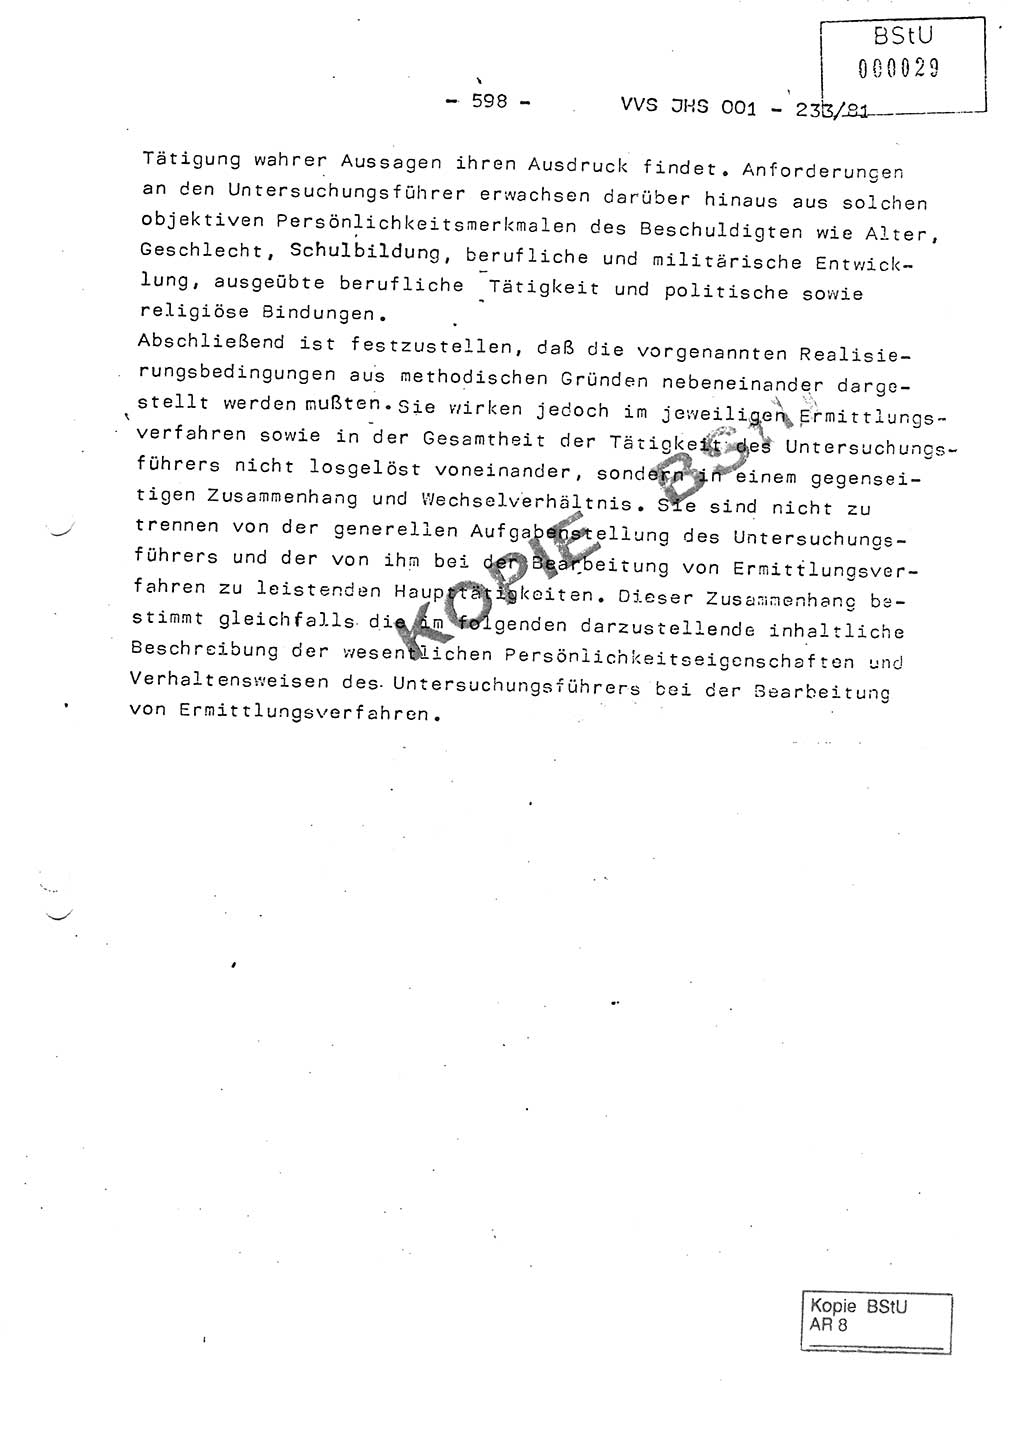 Dissertation Oberstleutnant Horst Zank (JHS), Oberstleutnant Dr. Karl-Heinz Knoblauch (JHS), Oberstleutnant Gustav-Adolf Kowalewski (HA Ⅸ), Oberstleutnant Wolfgang Plötner (HA Ⅸ), Ministerium für Staatssicherheit (MfS) [Deutsche Demokratische Republik (DDR)], Juristische Hochschule (JHS), Vertrauliche Verschlußsache (VVS) o001-233/81, Potsdam 1981, Blatt 598 (Diss. MfS DDR JHS VVS o001-233/81 1981, Bl. 598)